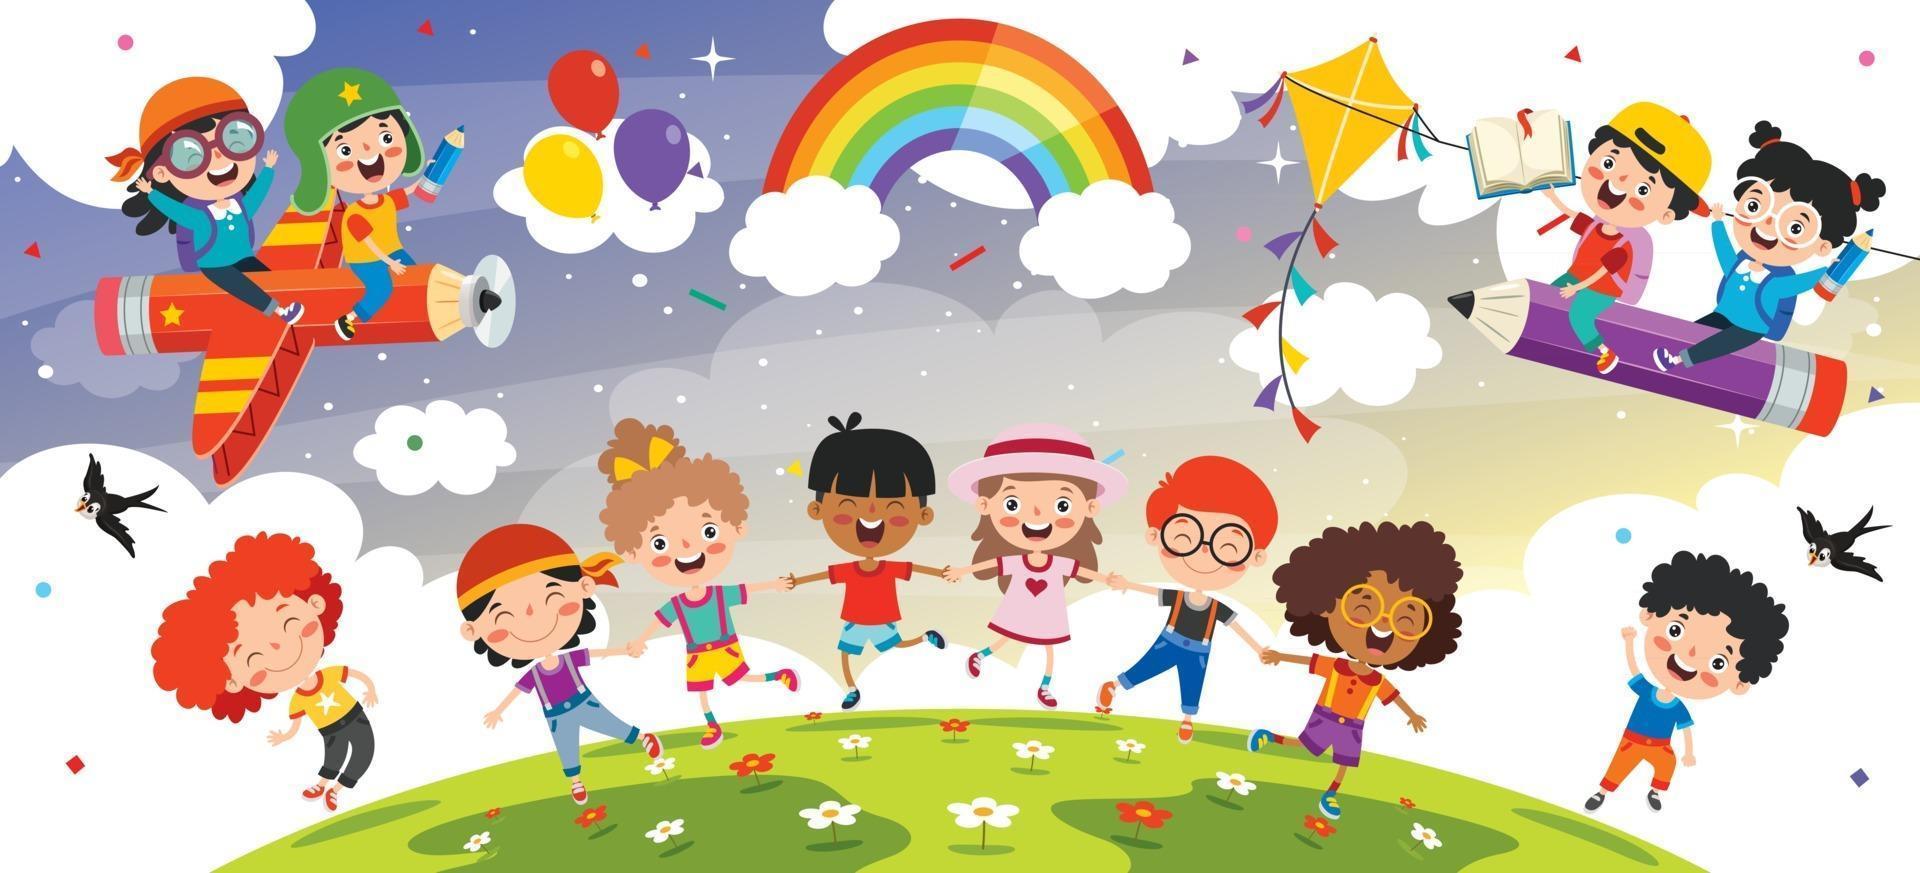 2399763 bambini multietnici felici che giocano insieme vettoriale